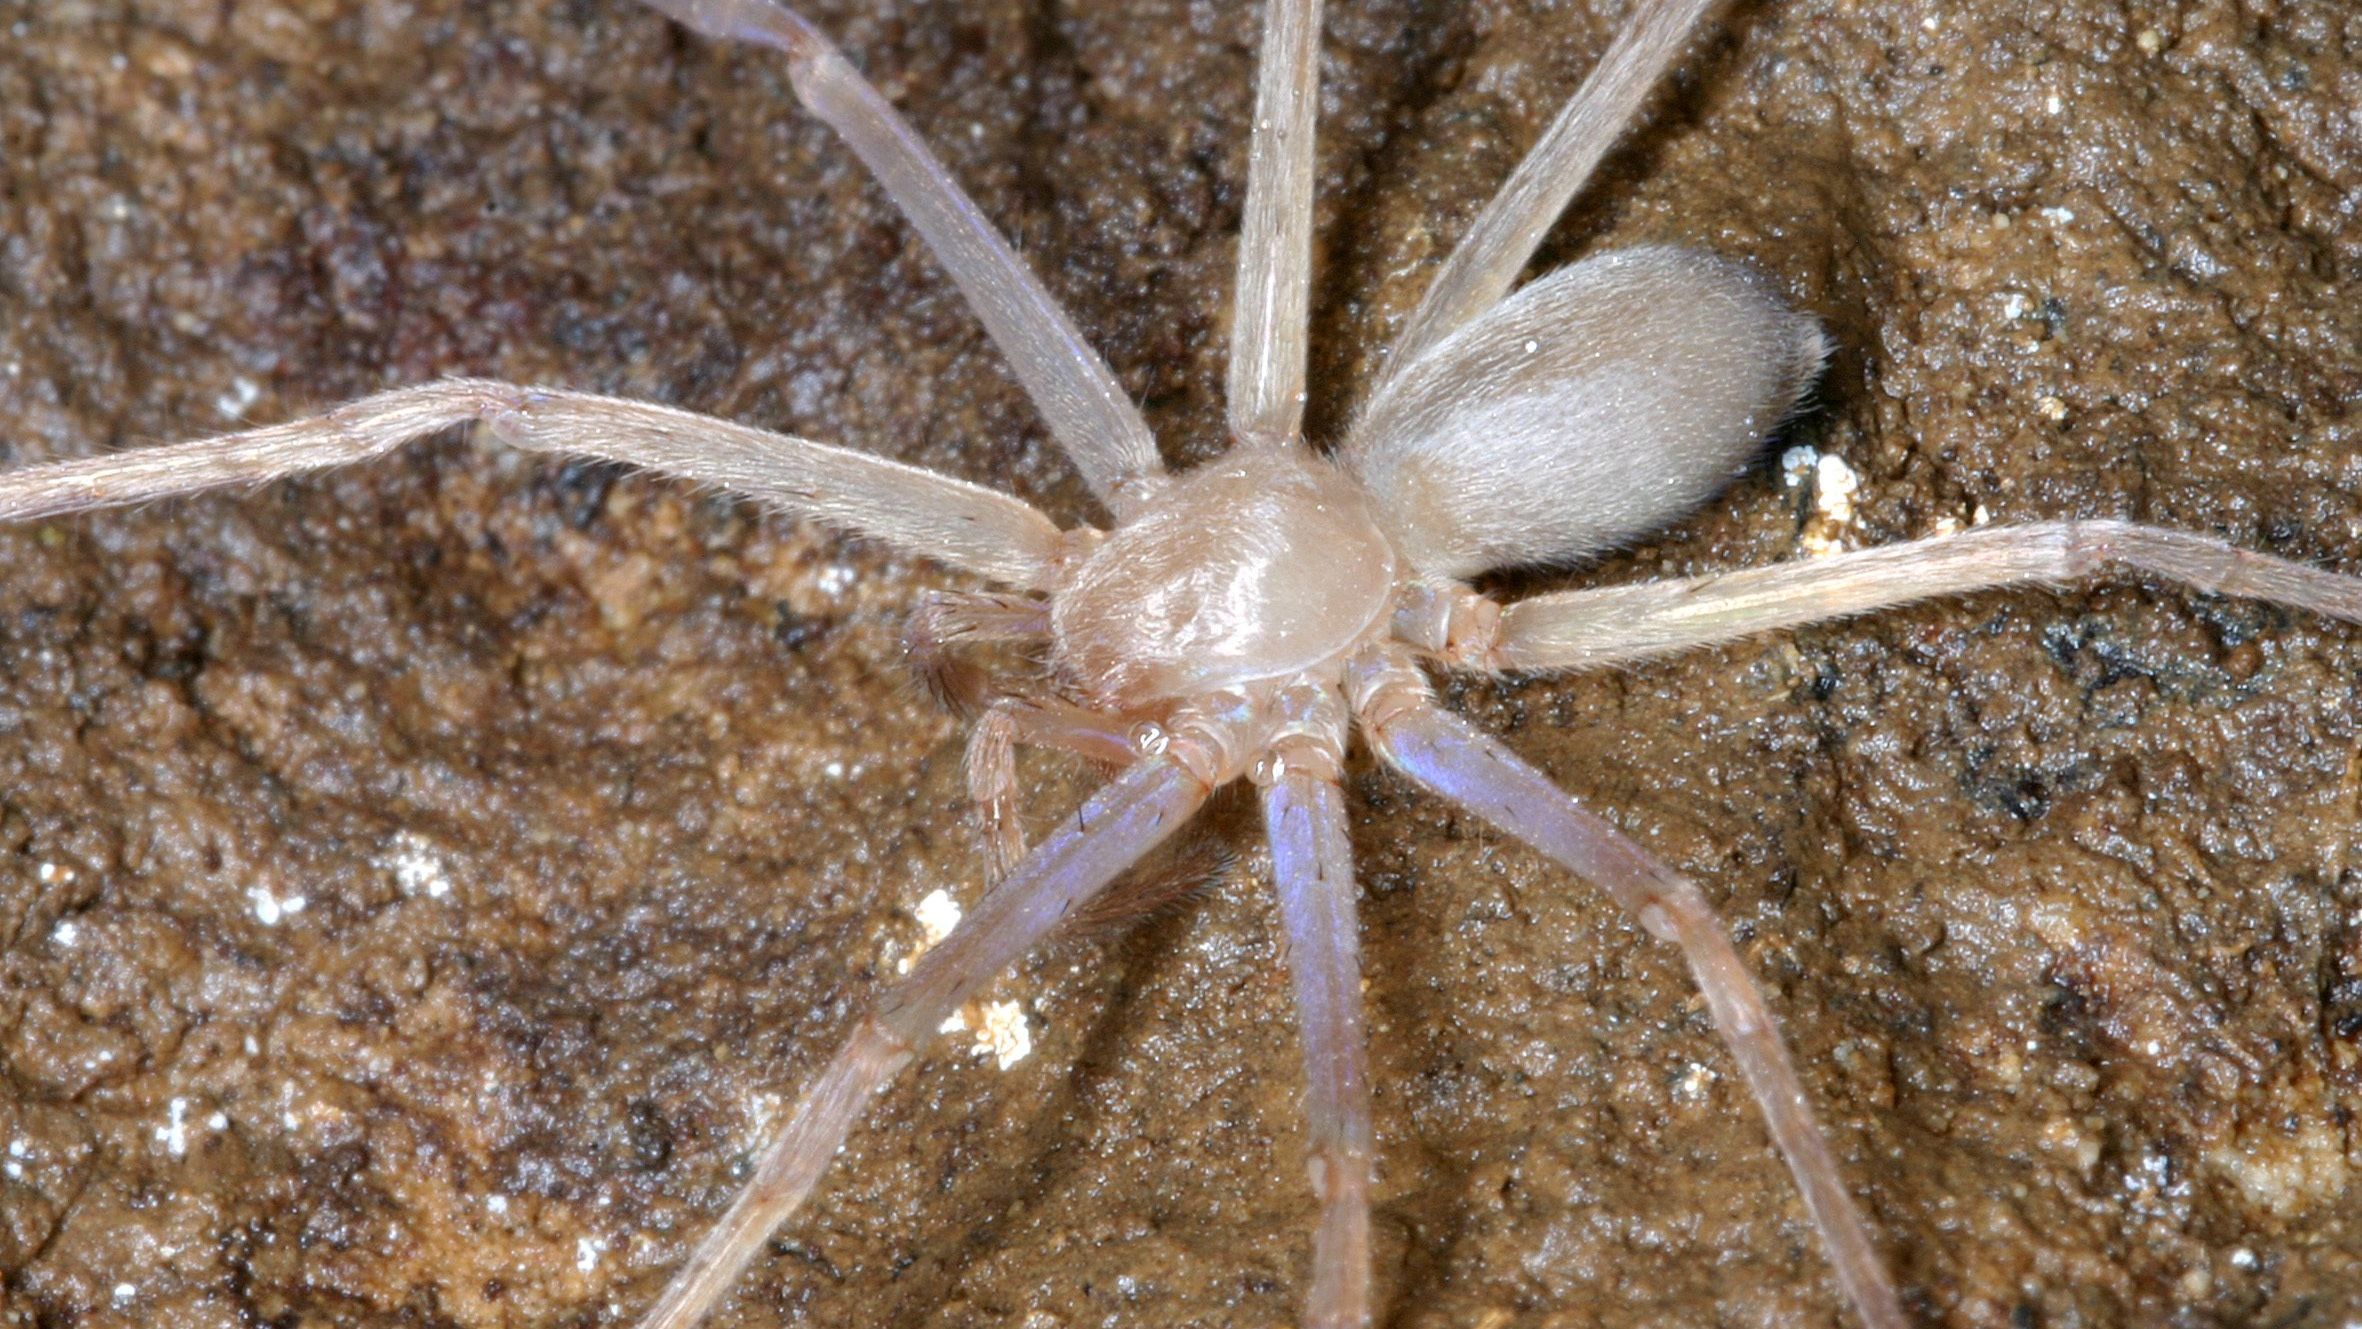 Manche Spinnen wie diese Riesenkrabbenspinne (Sinopoda scurion) haben gar keine Augen. Sie leben in einer Höhle ohne Tageslicht und orientieren sich anhand von Vibrationen und Schallwellen.